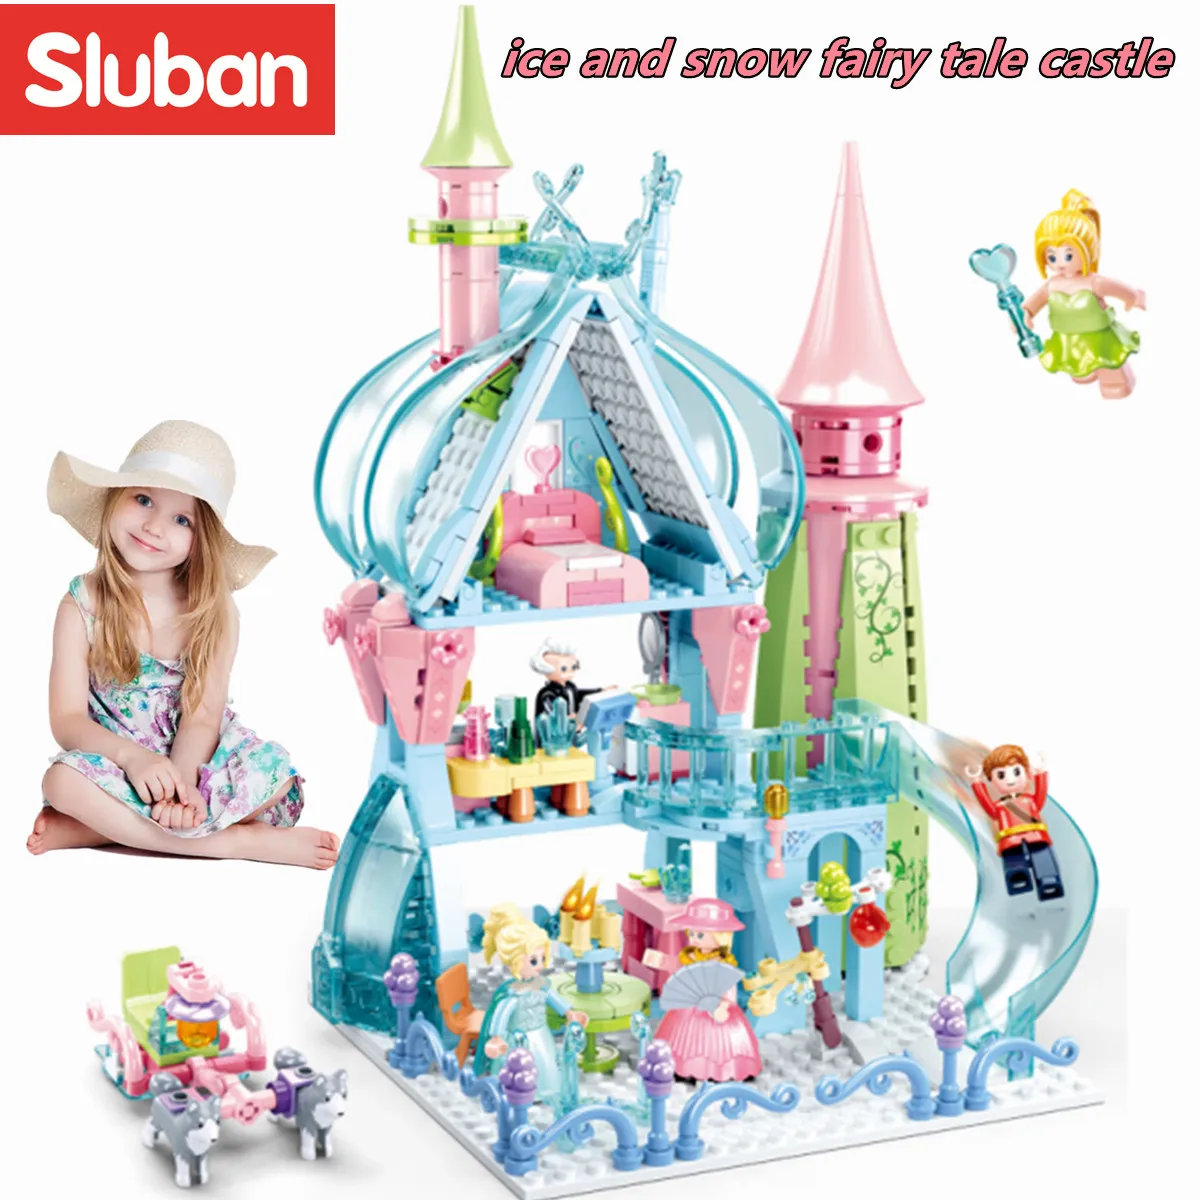 

Конструктор Sluban, игрушки, королевский замок мечты для девочек, 447 деталей, кирпичи B0898, друзья, Сказочная башня, Совместимость с ведущими брендами